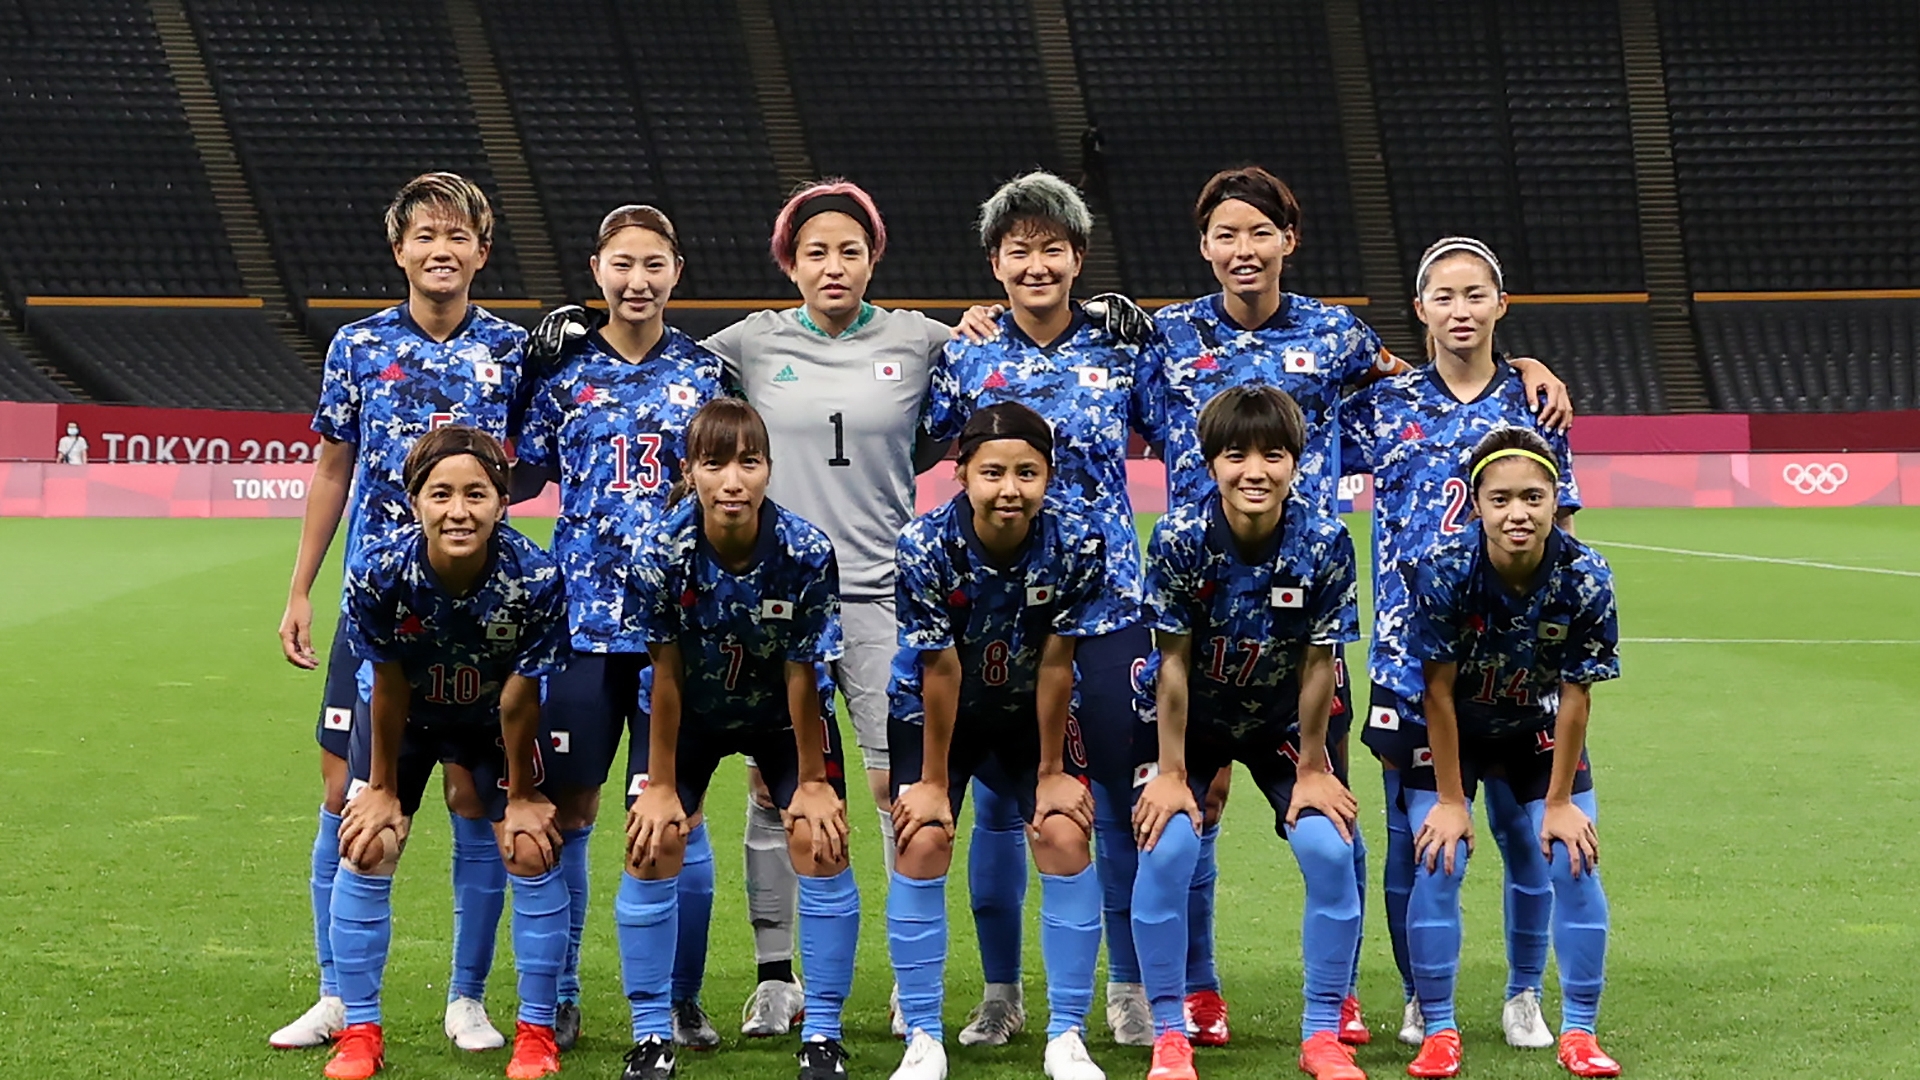 スタメン速報 なでしこジャパンvsイギリス女子代表 東京五輪女子サッカー Goal Com